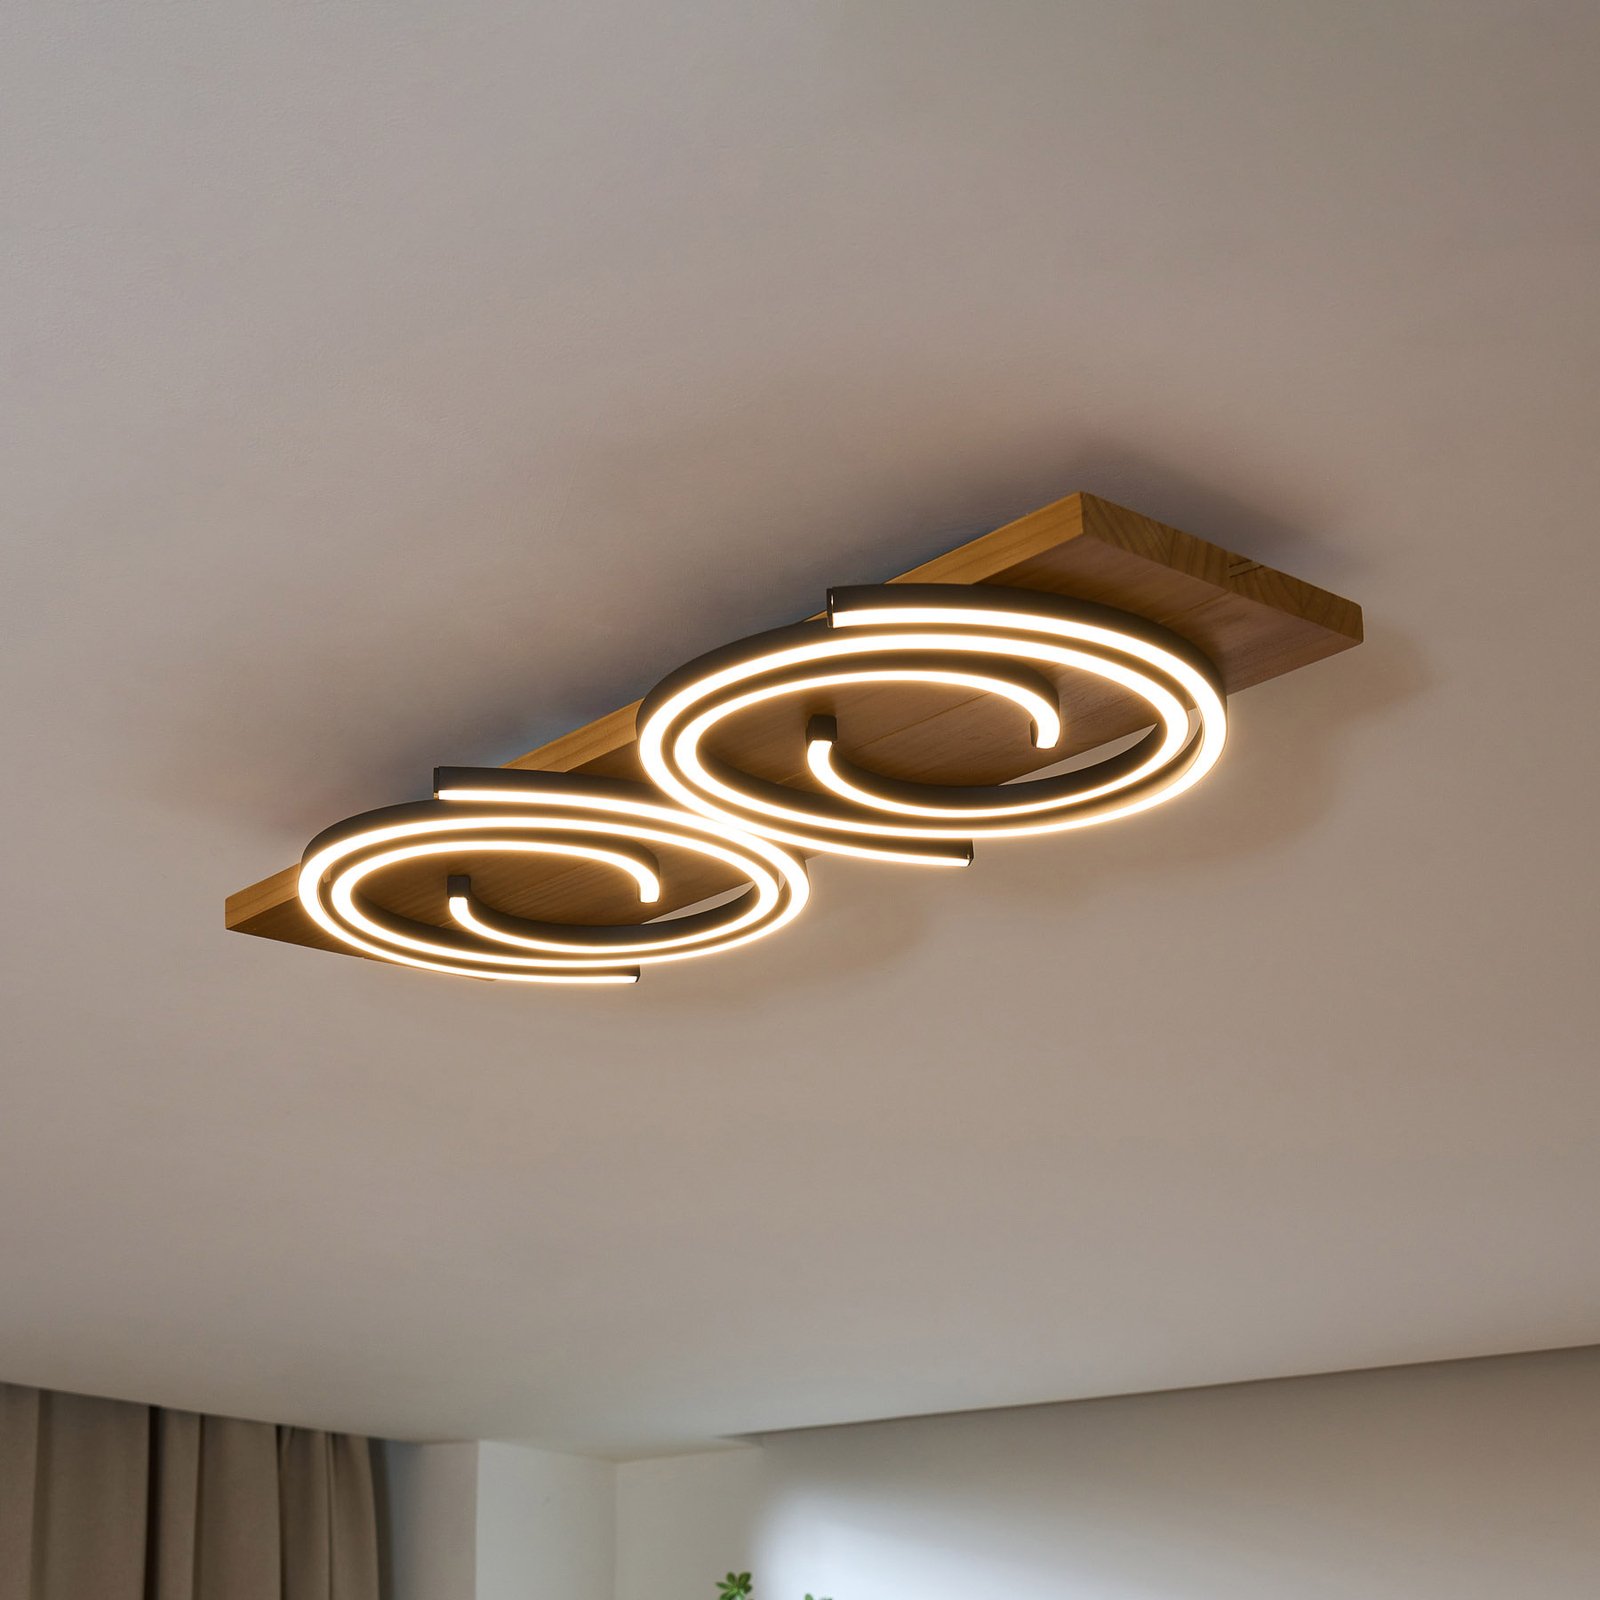 Rifia LED stropna svjetiljka, smeđa, dužina 70 cm, 2 žarulje. Drvo